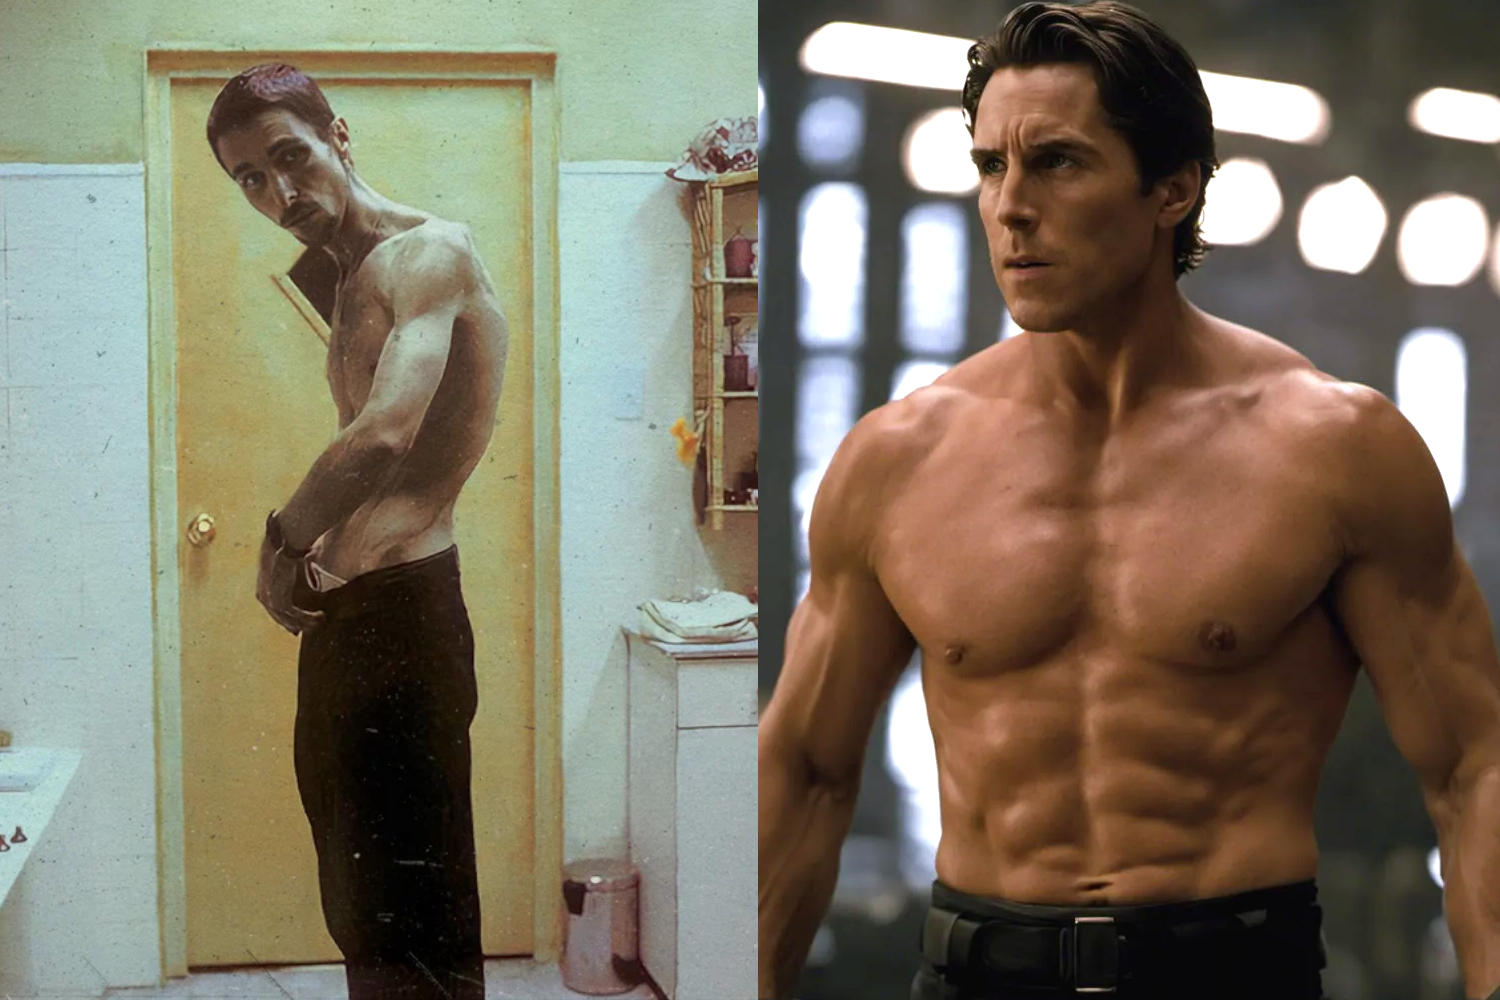 Dieta de Christian Bale em "O Operário" foi responsável por transformação física radical